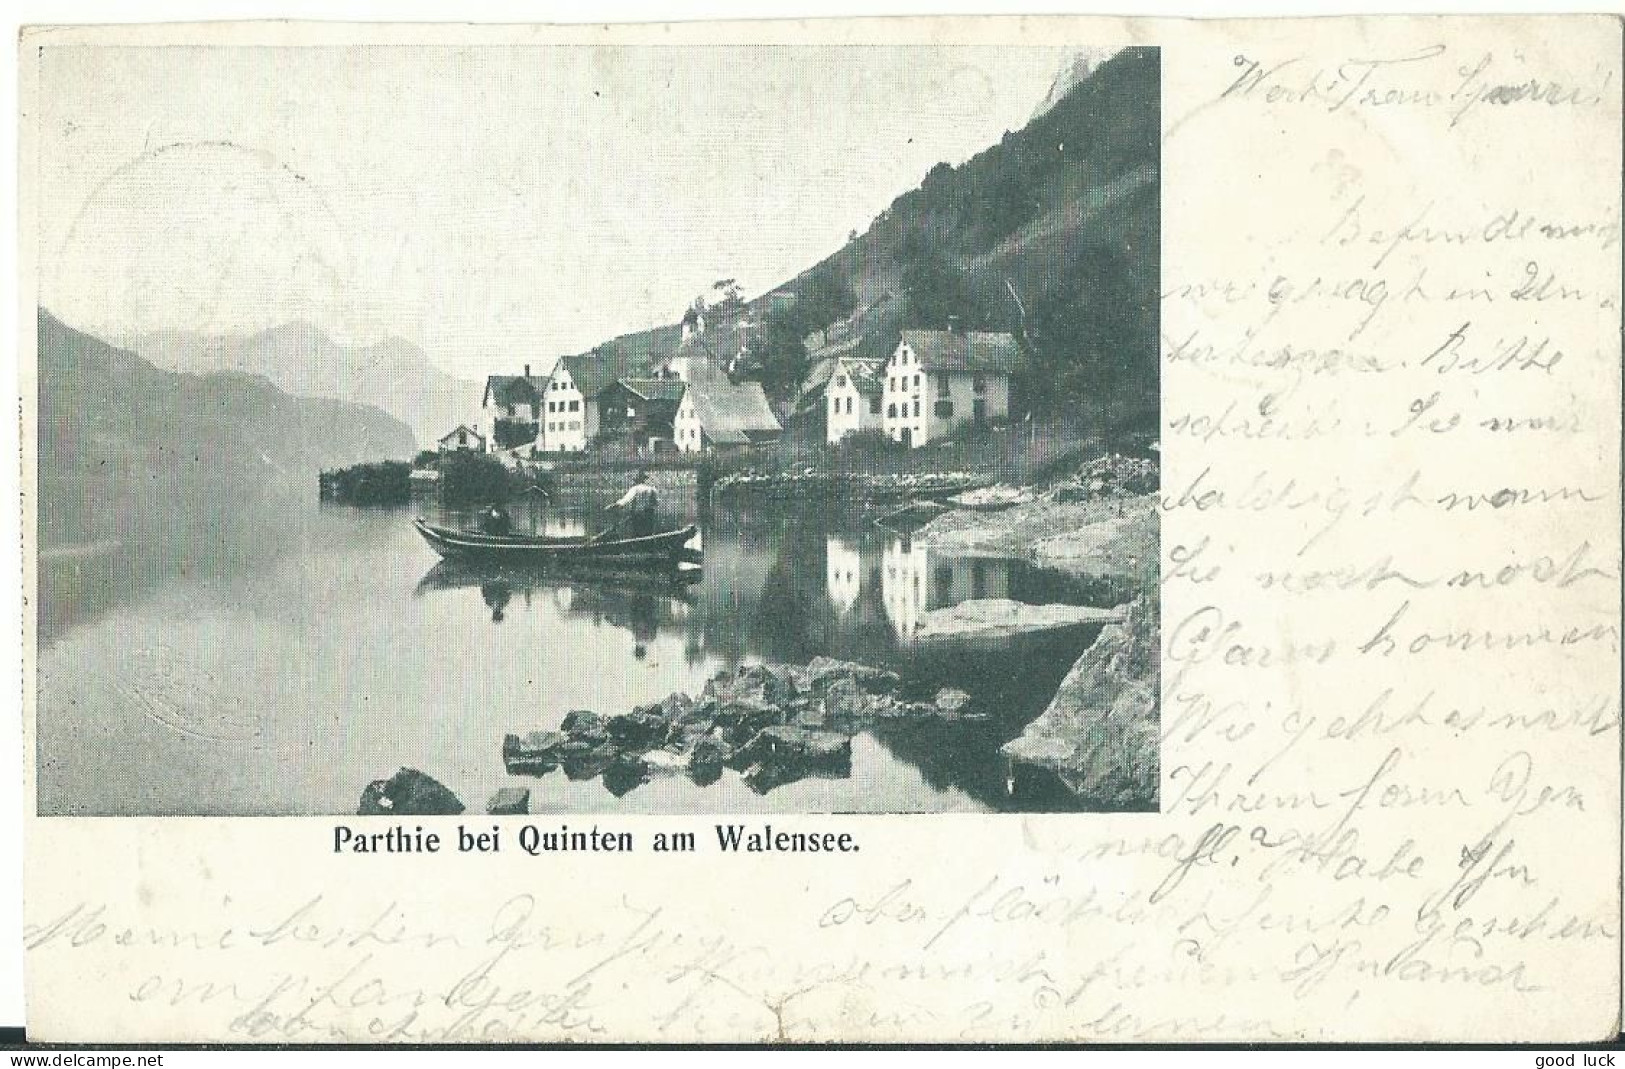 SUISSE  CARTE 5c  MARQUE LINEAIRE FILZBACH  + AMBULANT N° 26  DE 1901 LETTRE COVER - Lettres & Documents